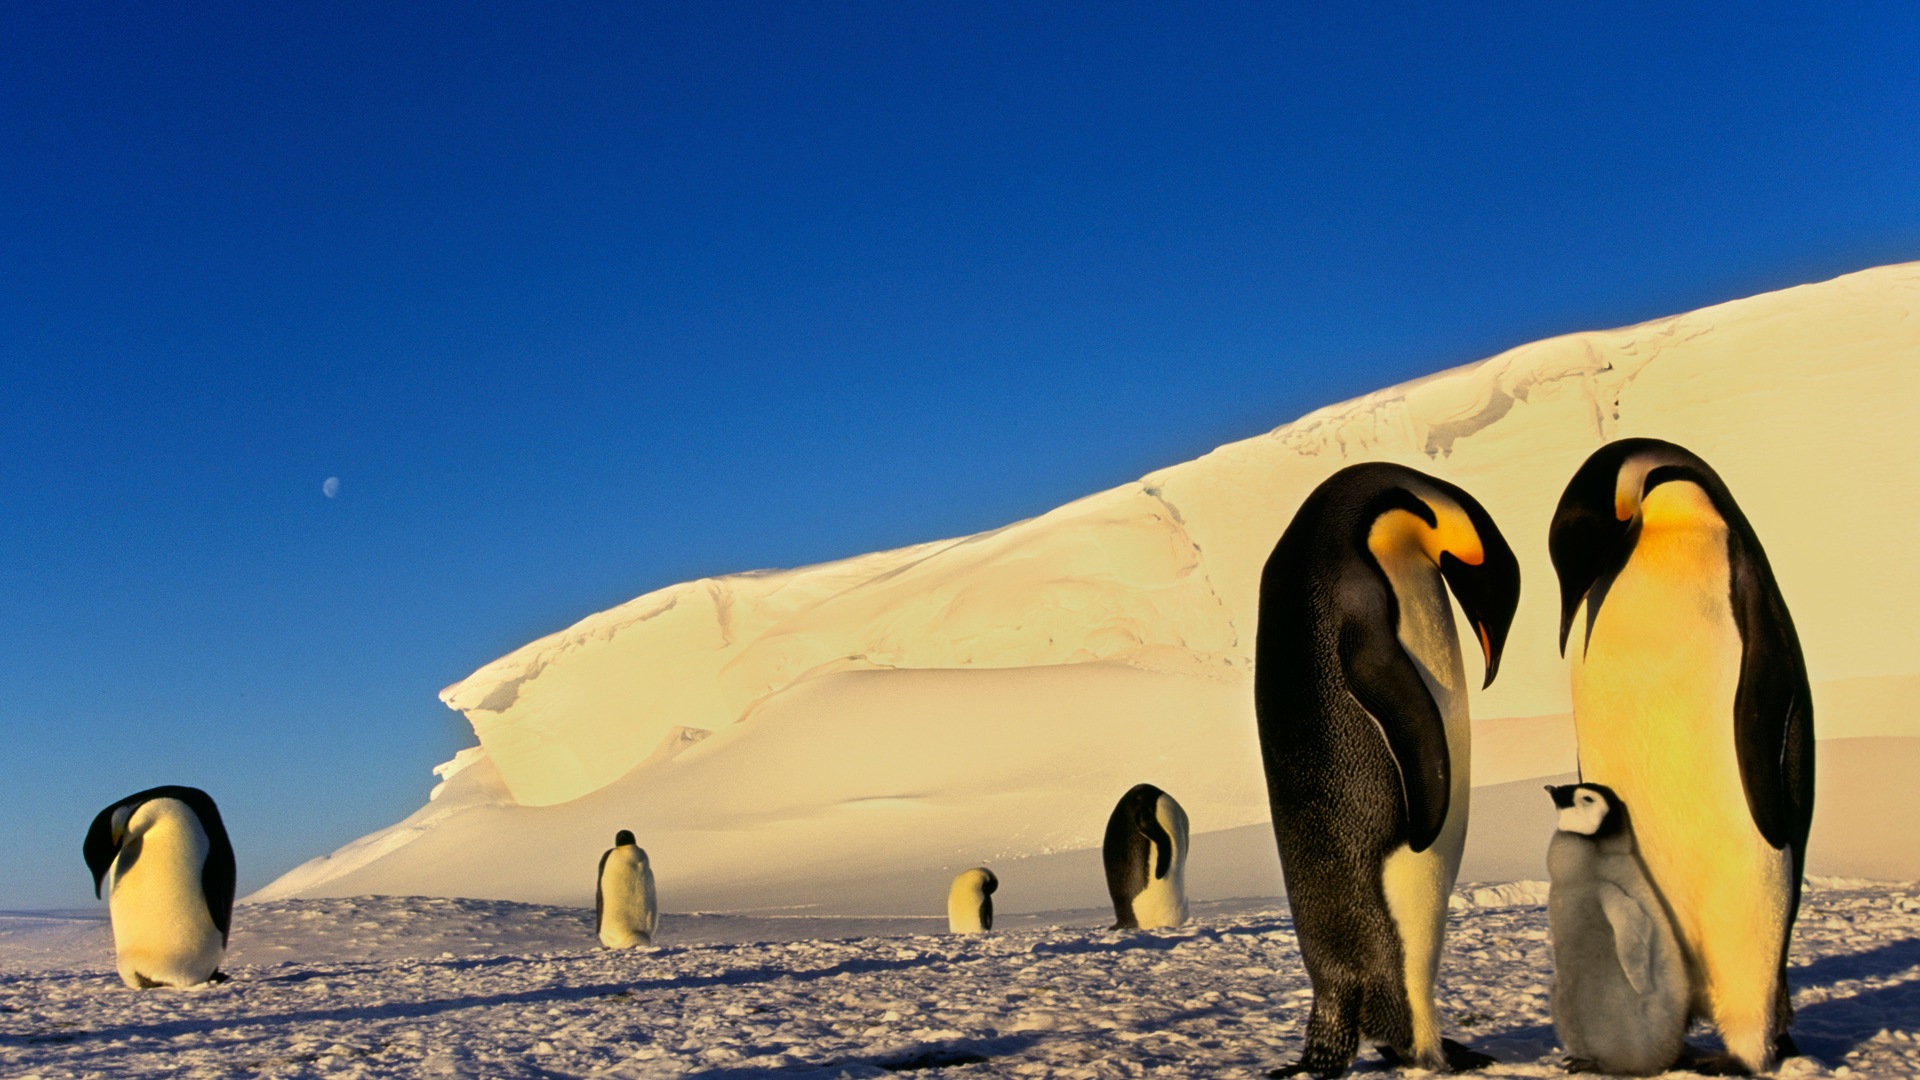 Windows 8 Wallpaper: Antarktis, Schnee Landschaft der Antarktis Pinguine #3 - 1920x1080